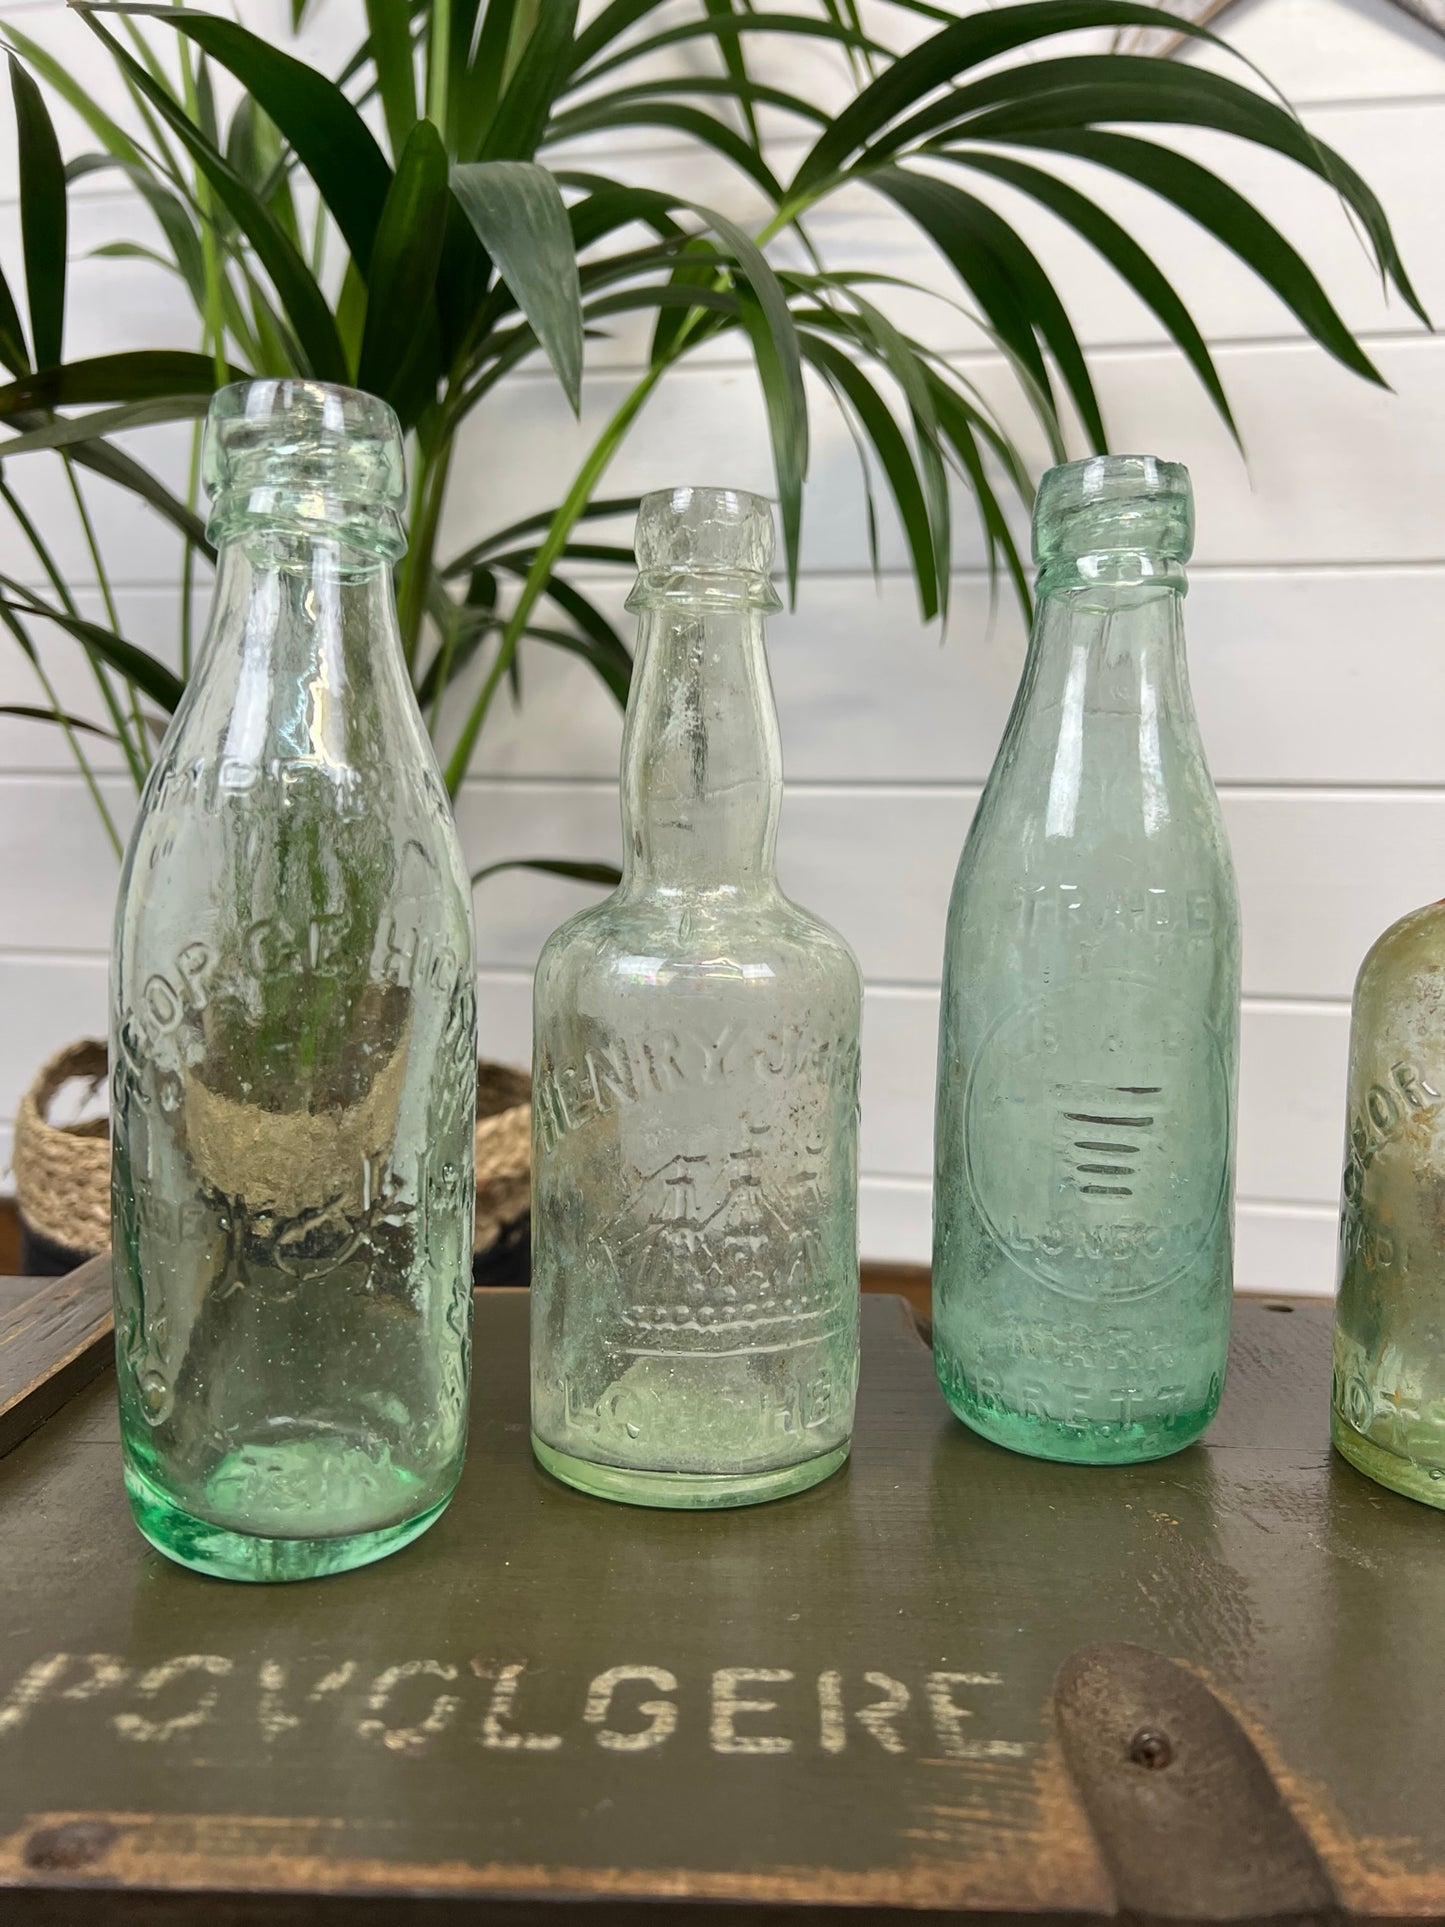 5x Vintage Glass Bottles Decorative Codd Neck Bottle Wedding Centre Decor Rustic Home Deco